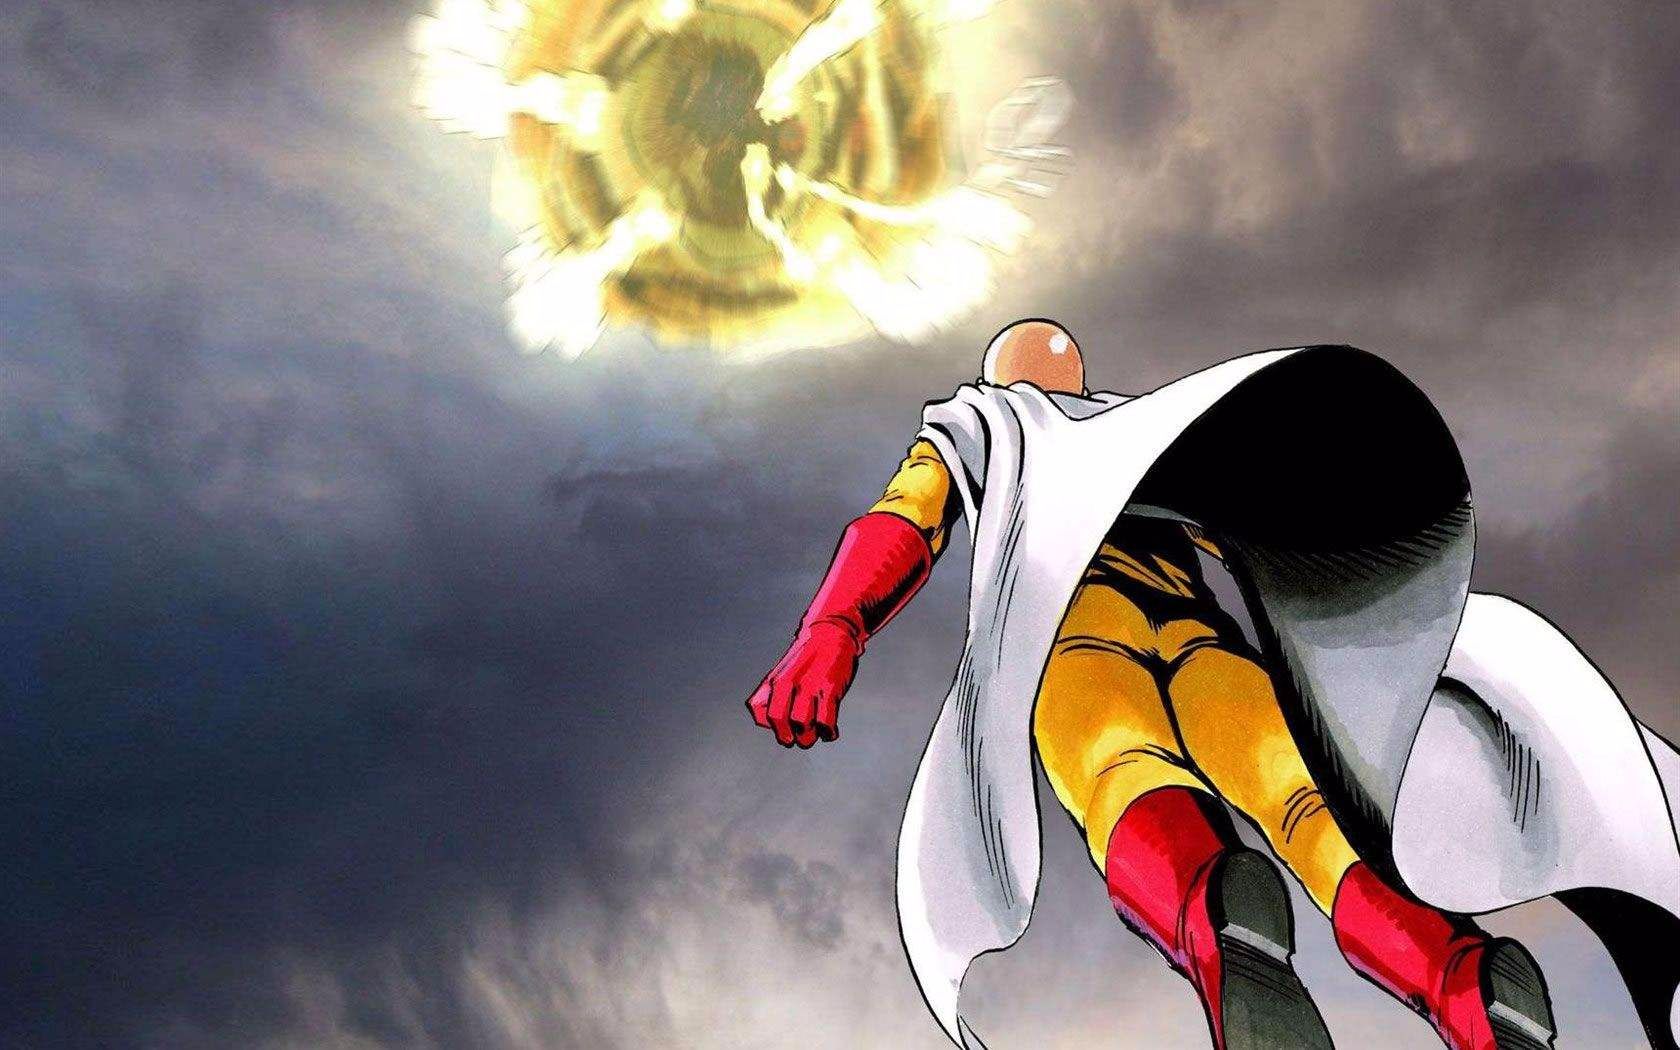 【一拳超人最强之男】一拳超人最强之男原子武士怎么样 英雄技能属性介绍